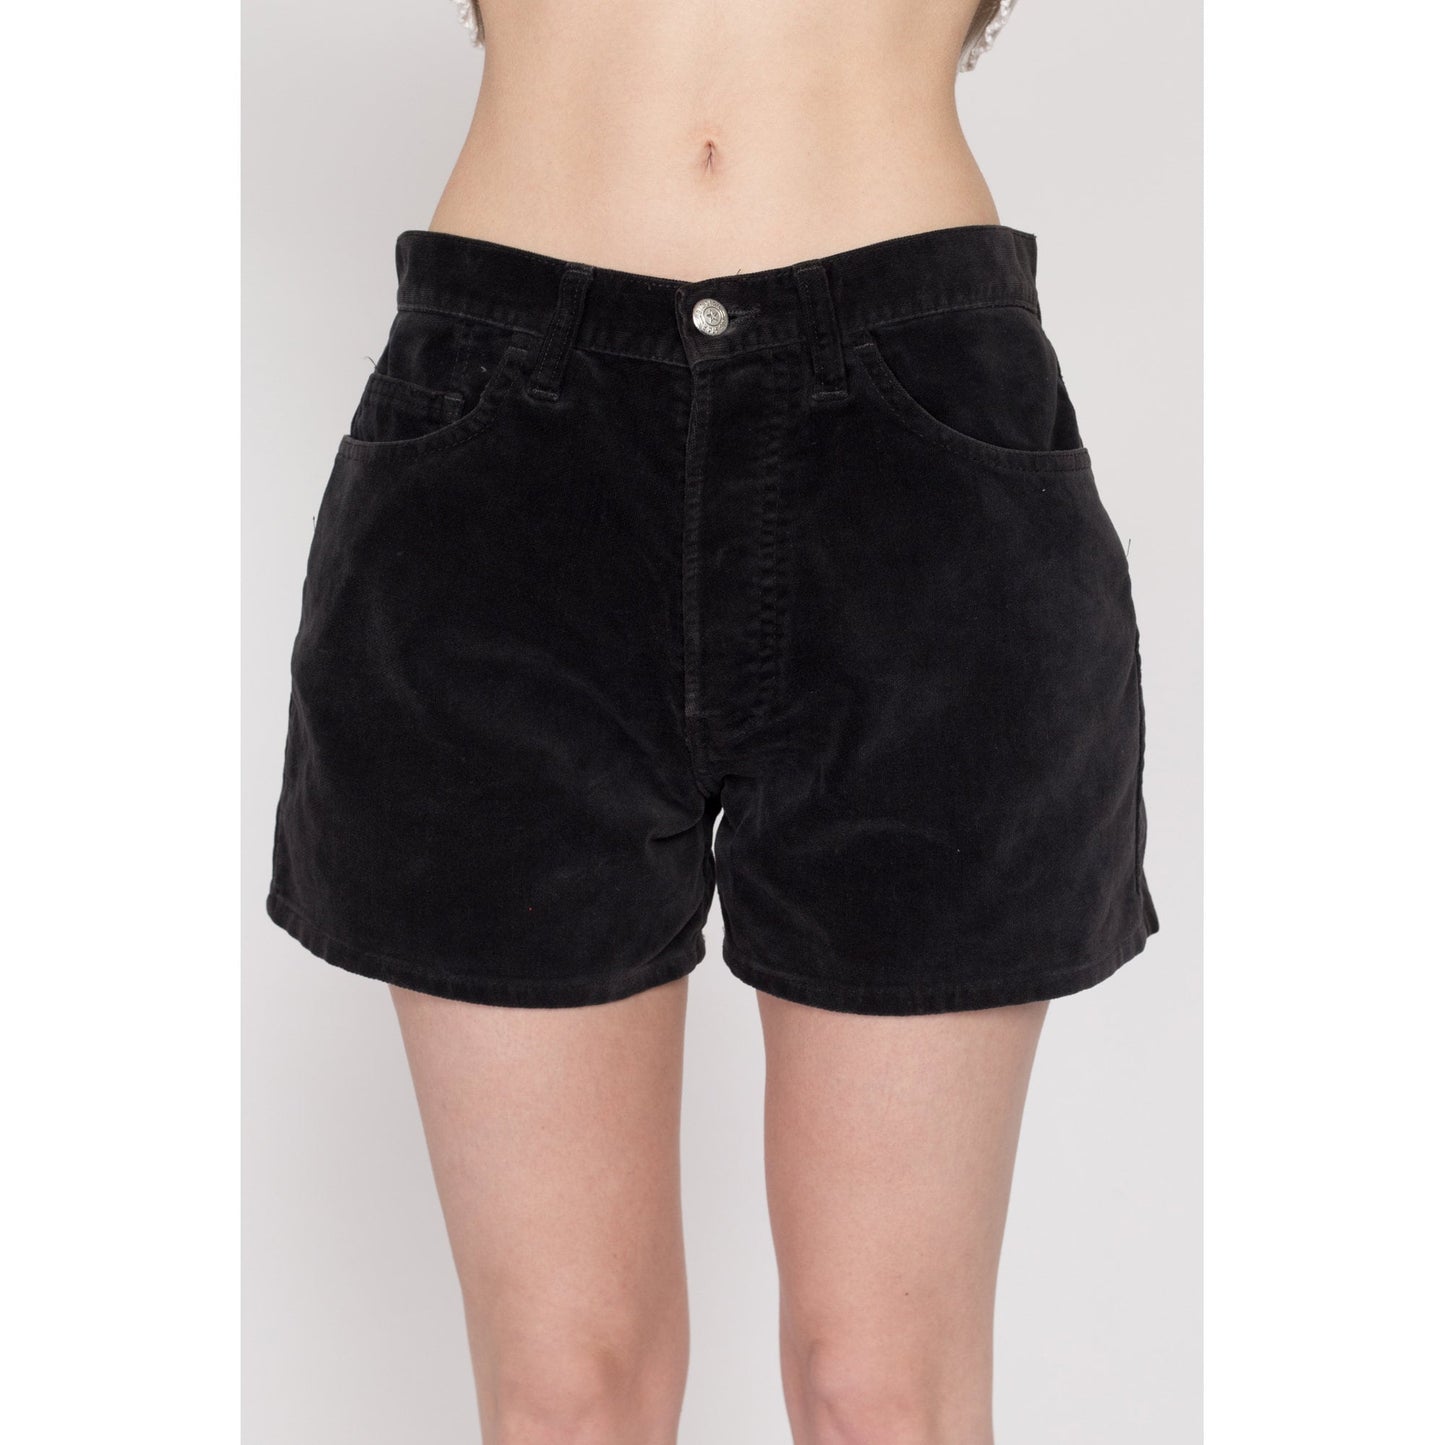 Medium 90s Dark Grey Velvet Shorts 30" | Vintage High Waisted Cotton Velveteen Shorts